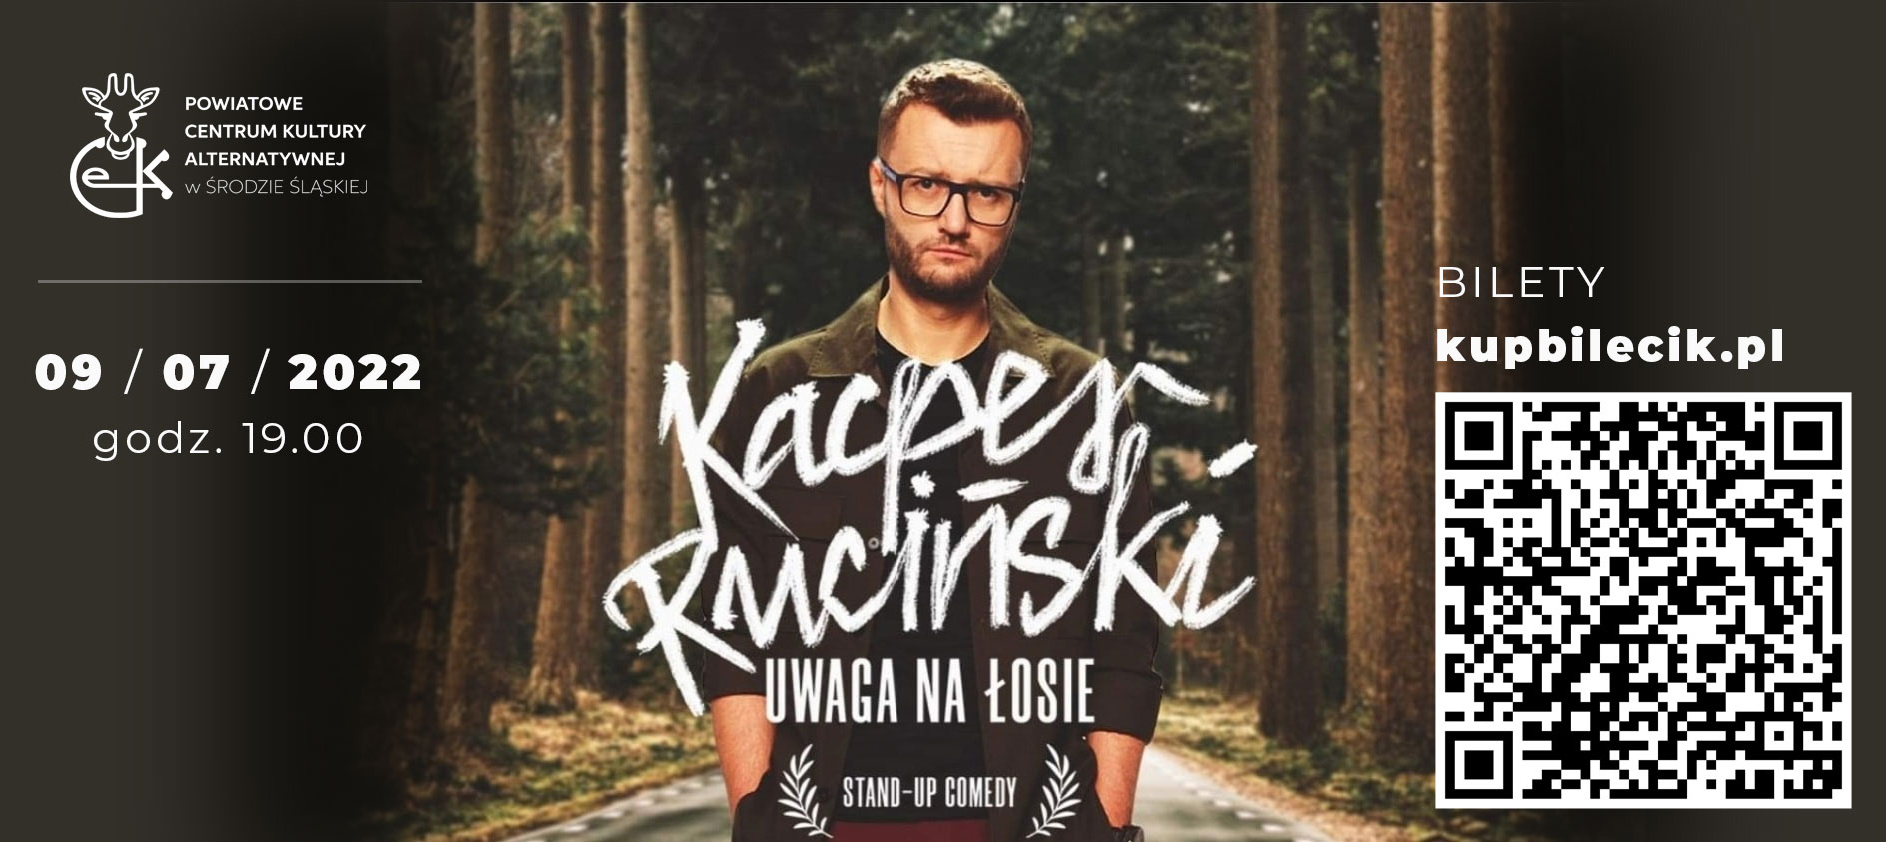 Plakat promujący występ Kacpra Rucińskiego